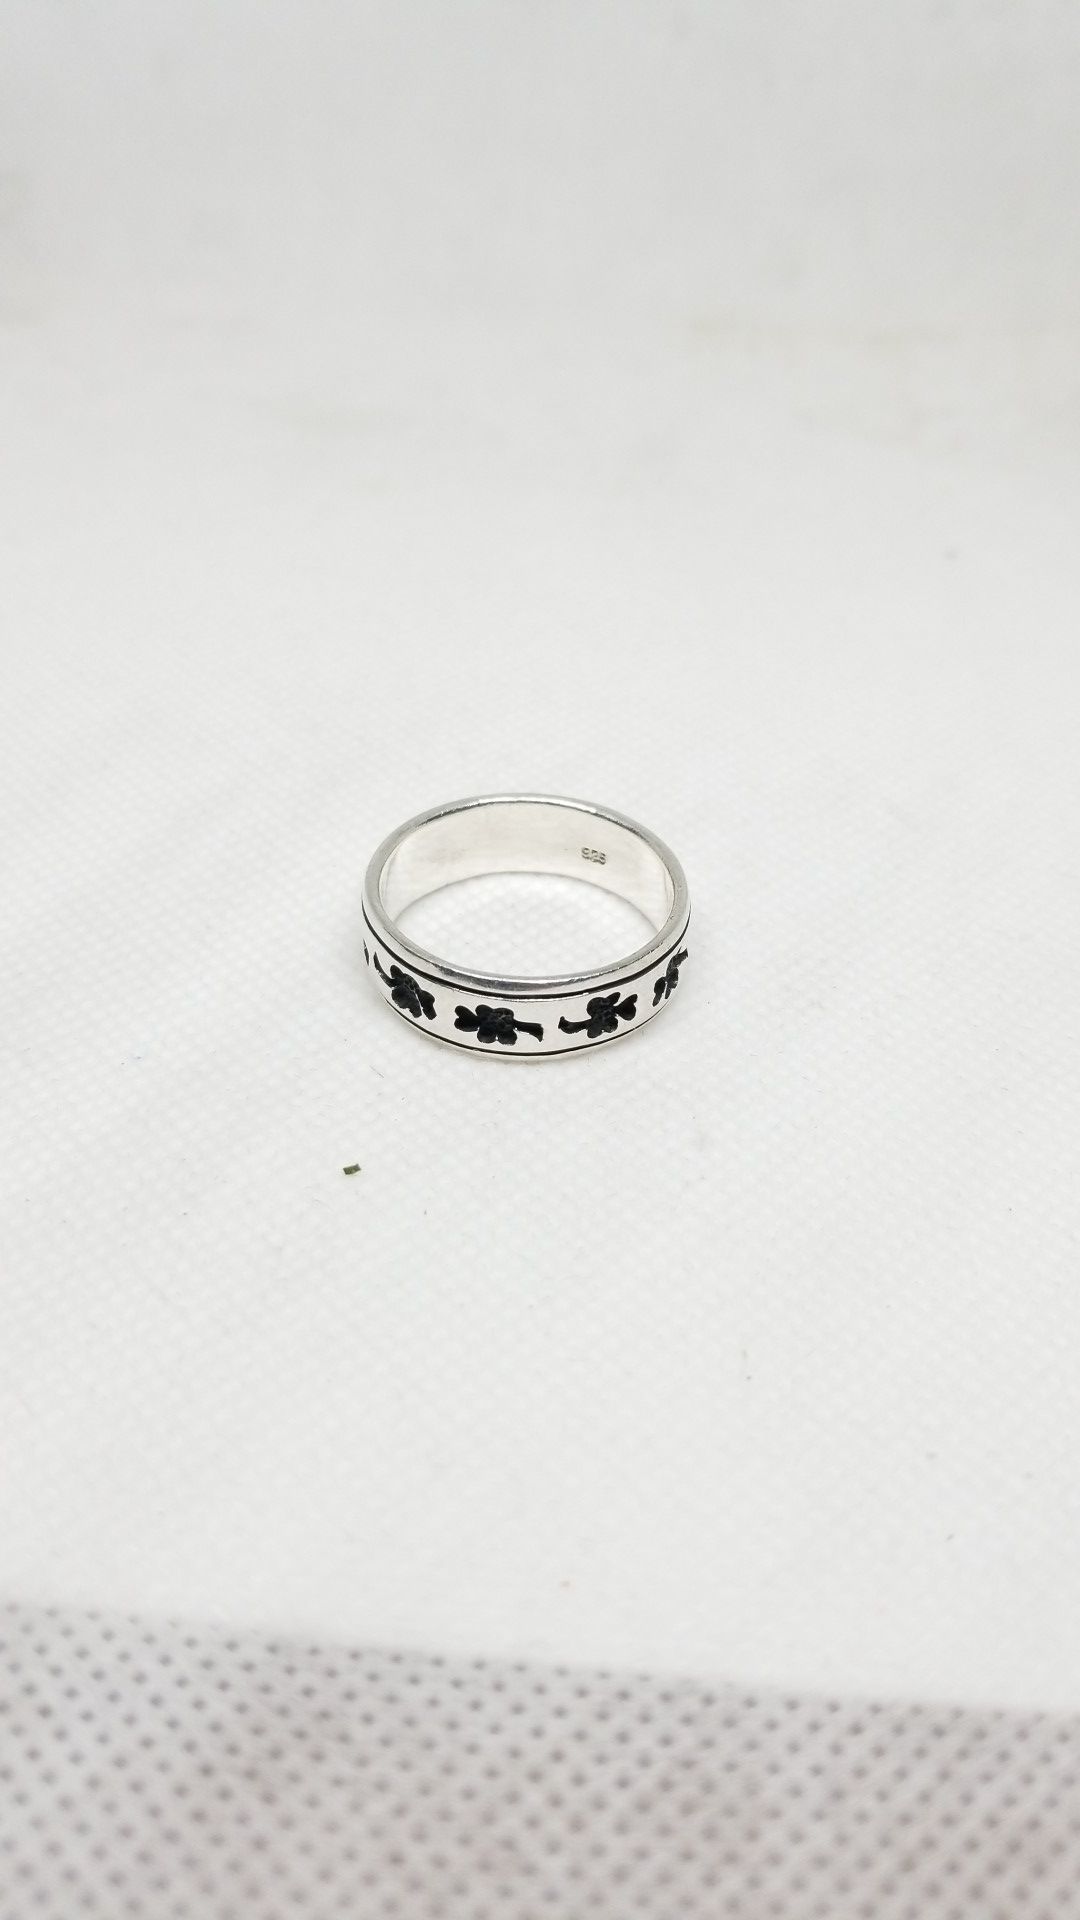 Mens sterling silver ring. 3 leaf clover design. Size 14.